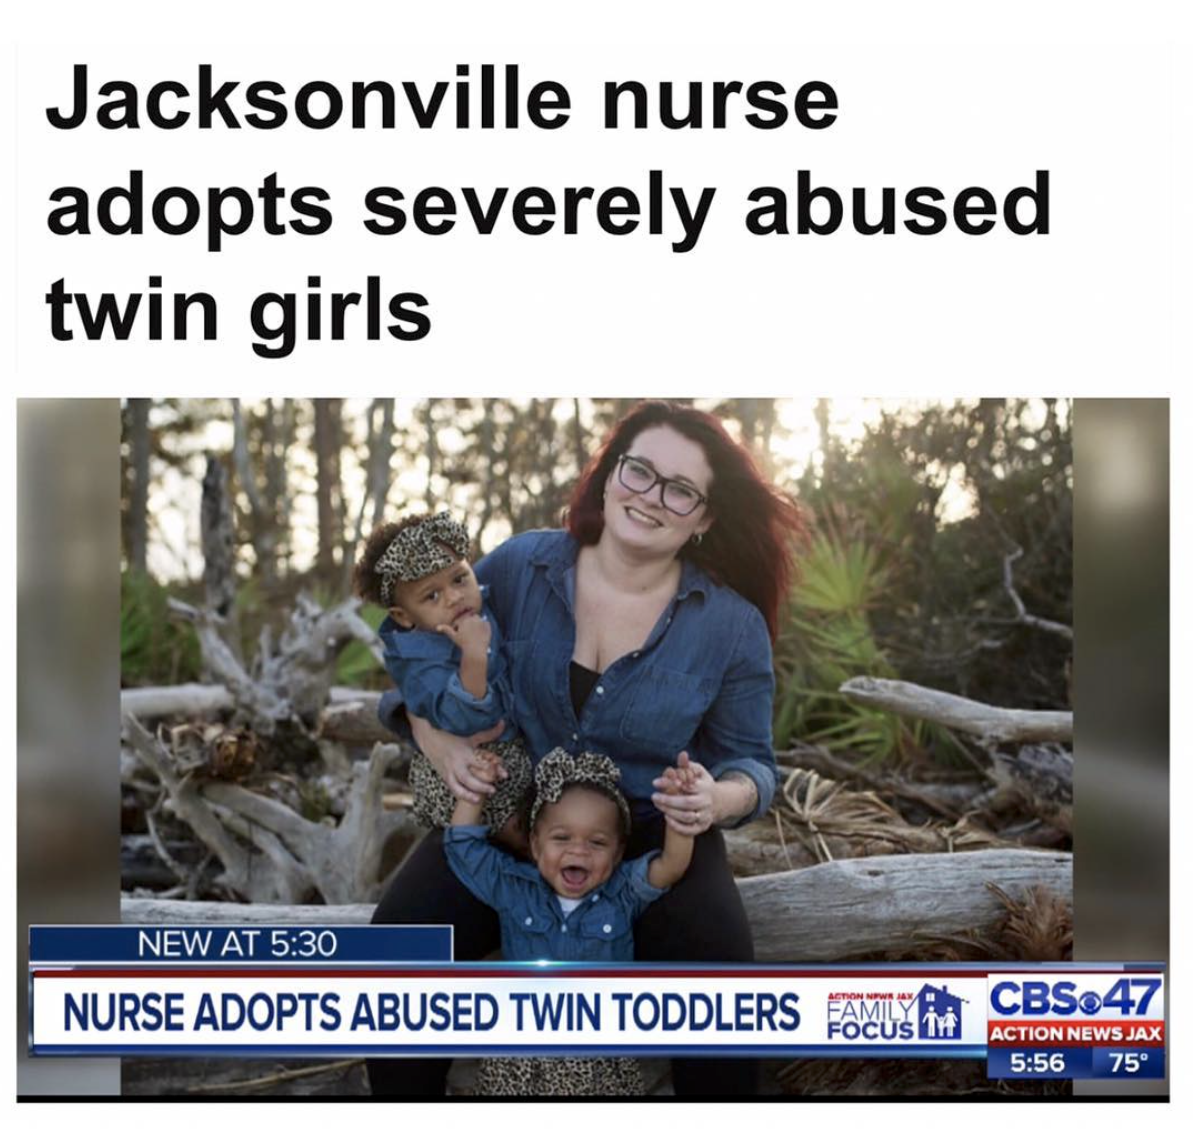 tree - Jacksonville nurse adopts severely abused twin girls New At Nurse Adopts Abused Twin Toddlers Fanusia CBS47 Action News Jax 75